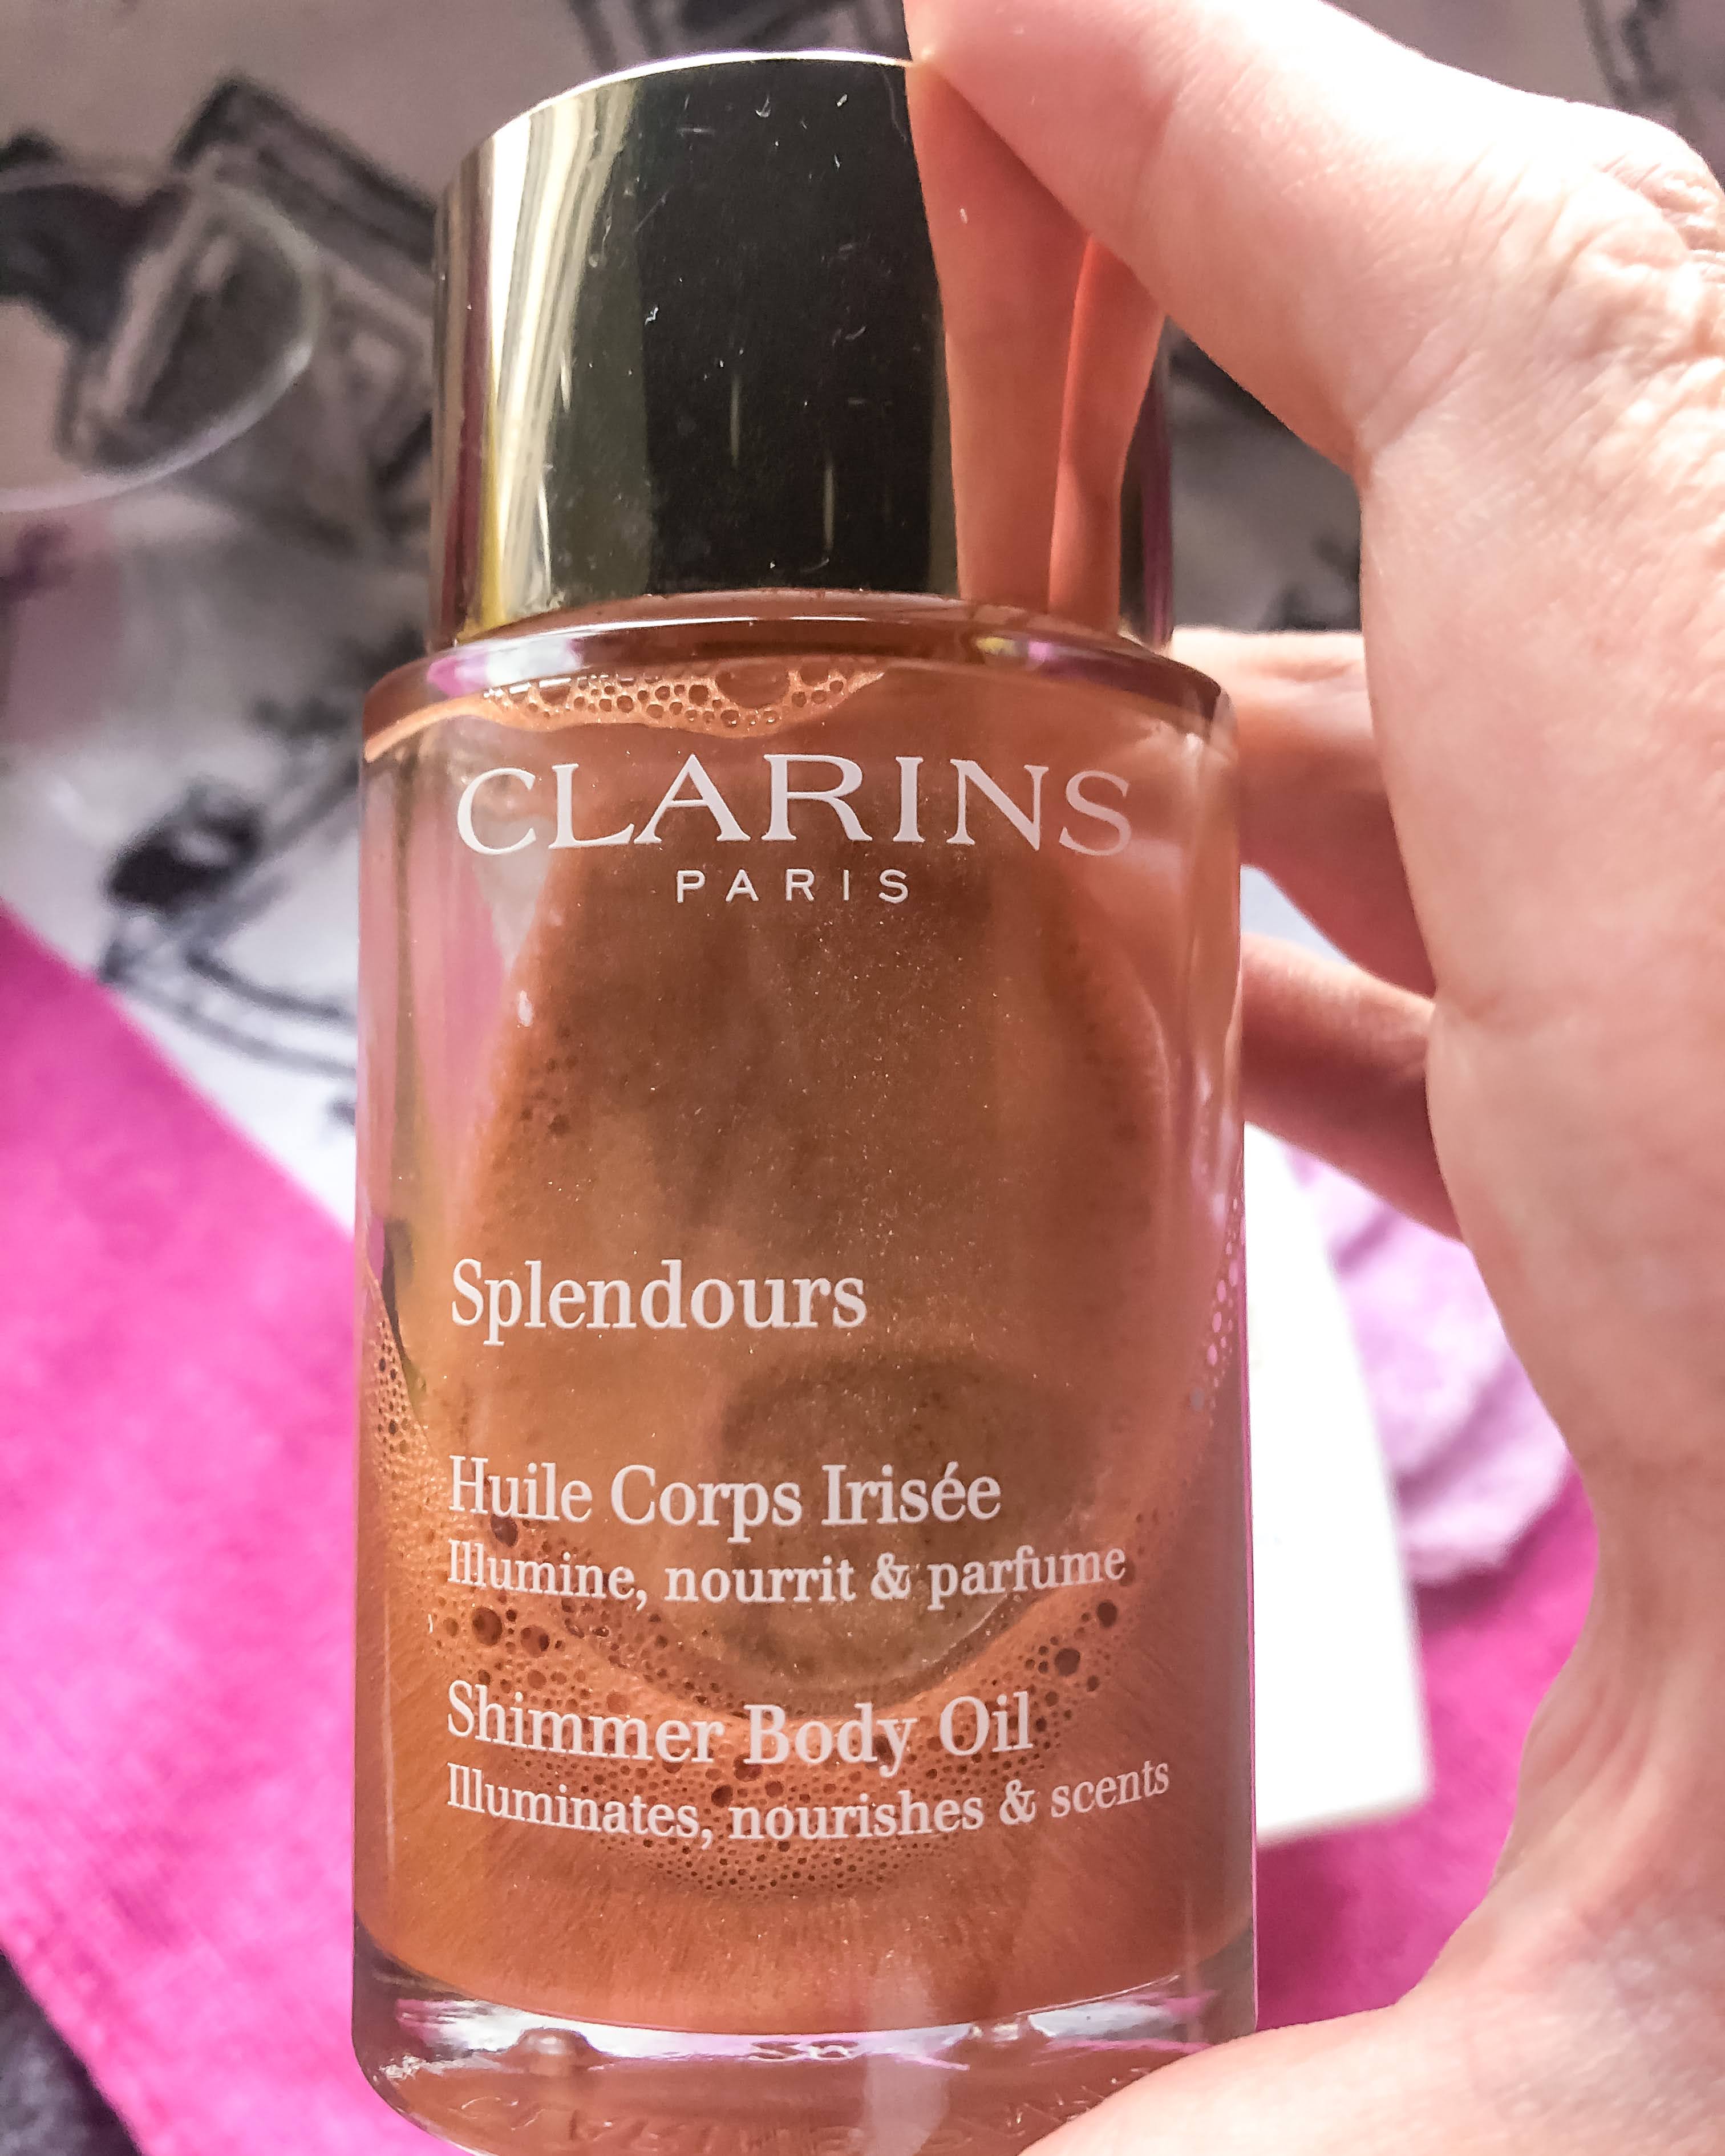 Clarins Splendours shimmer body Oil